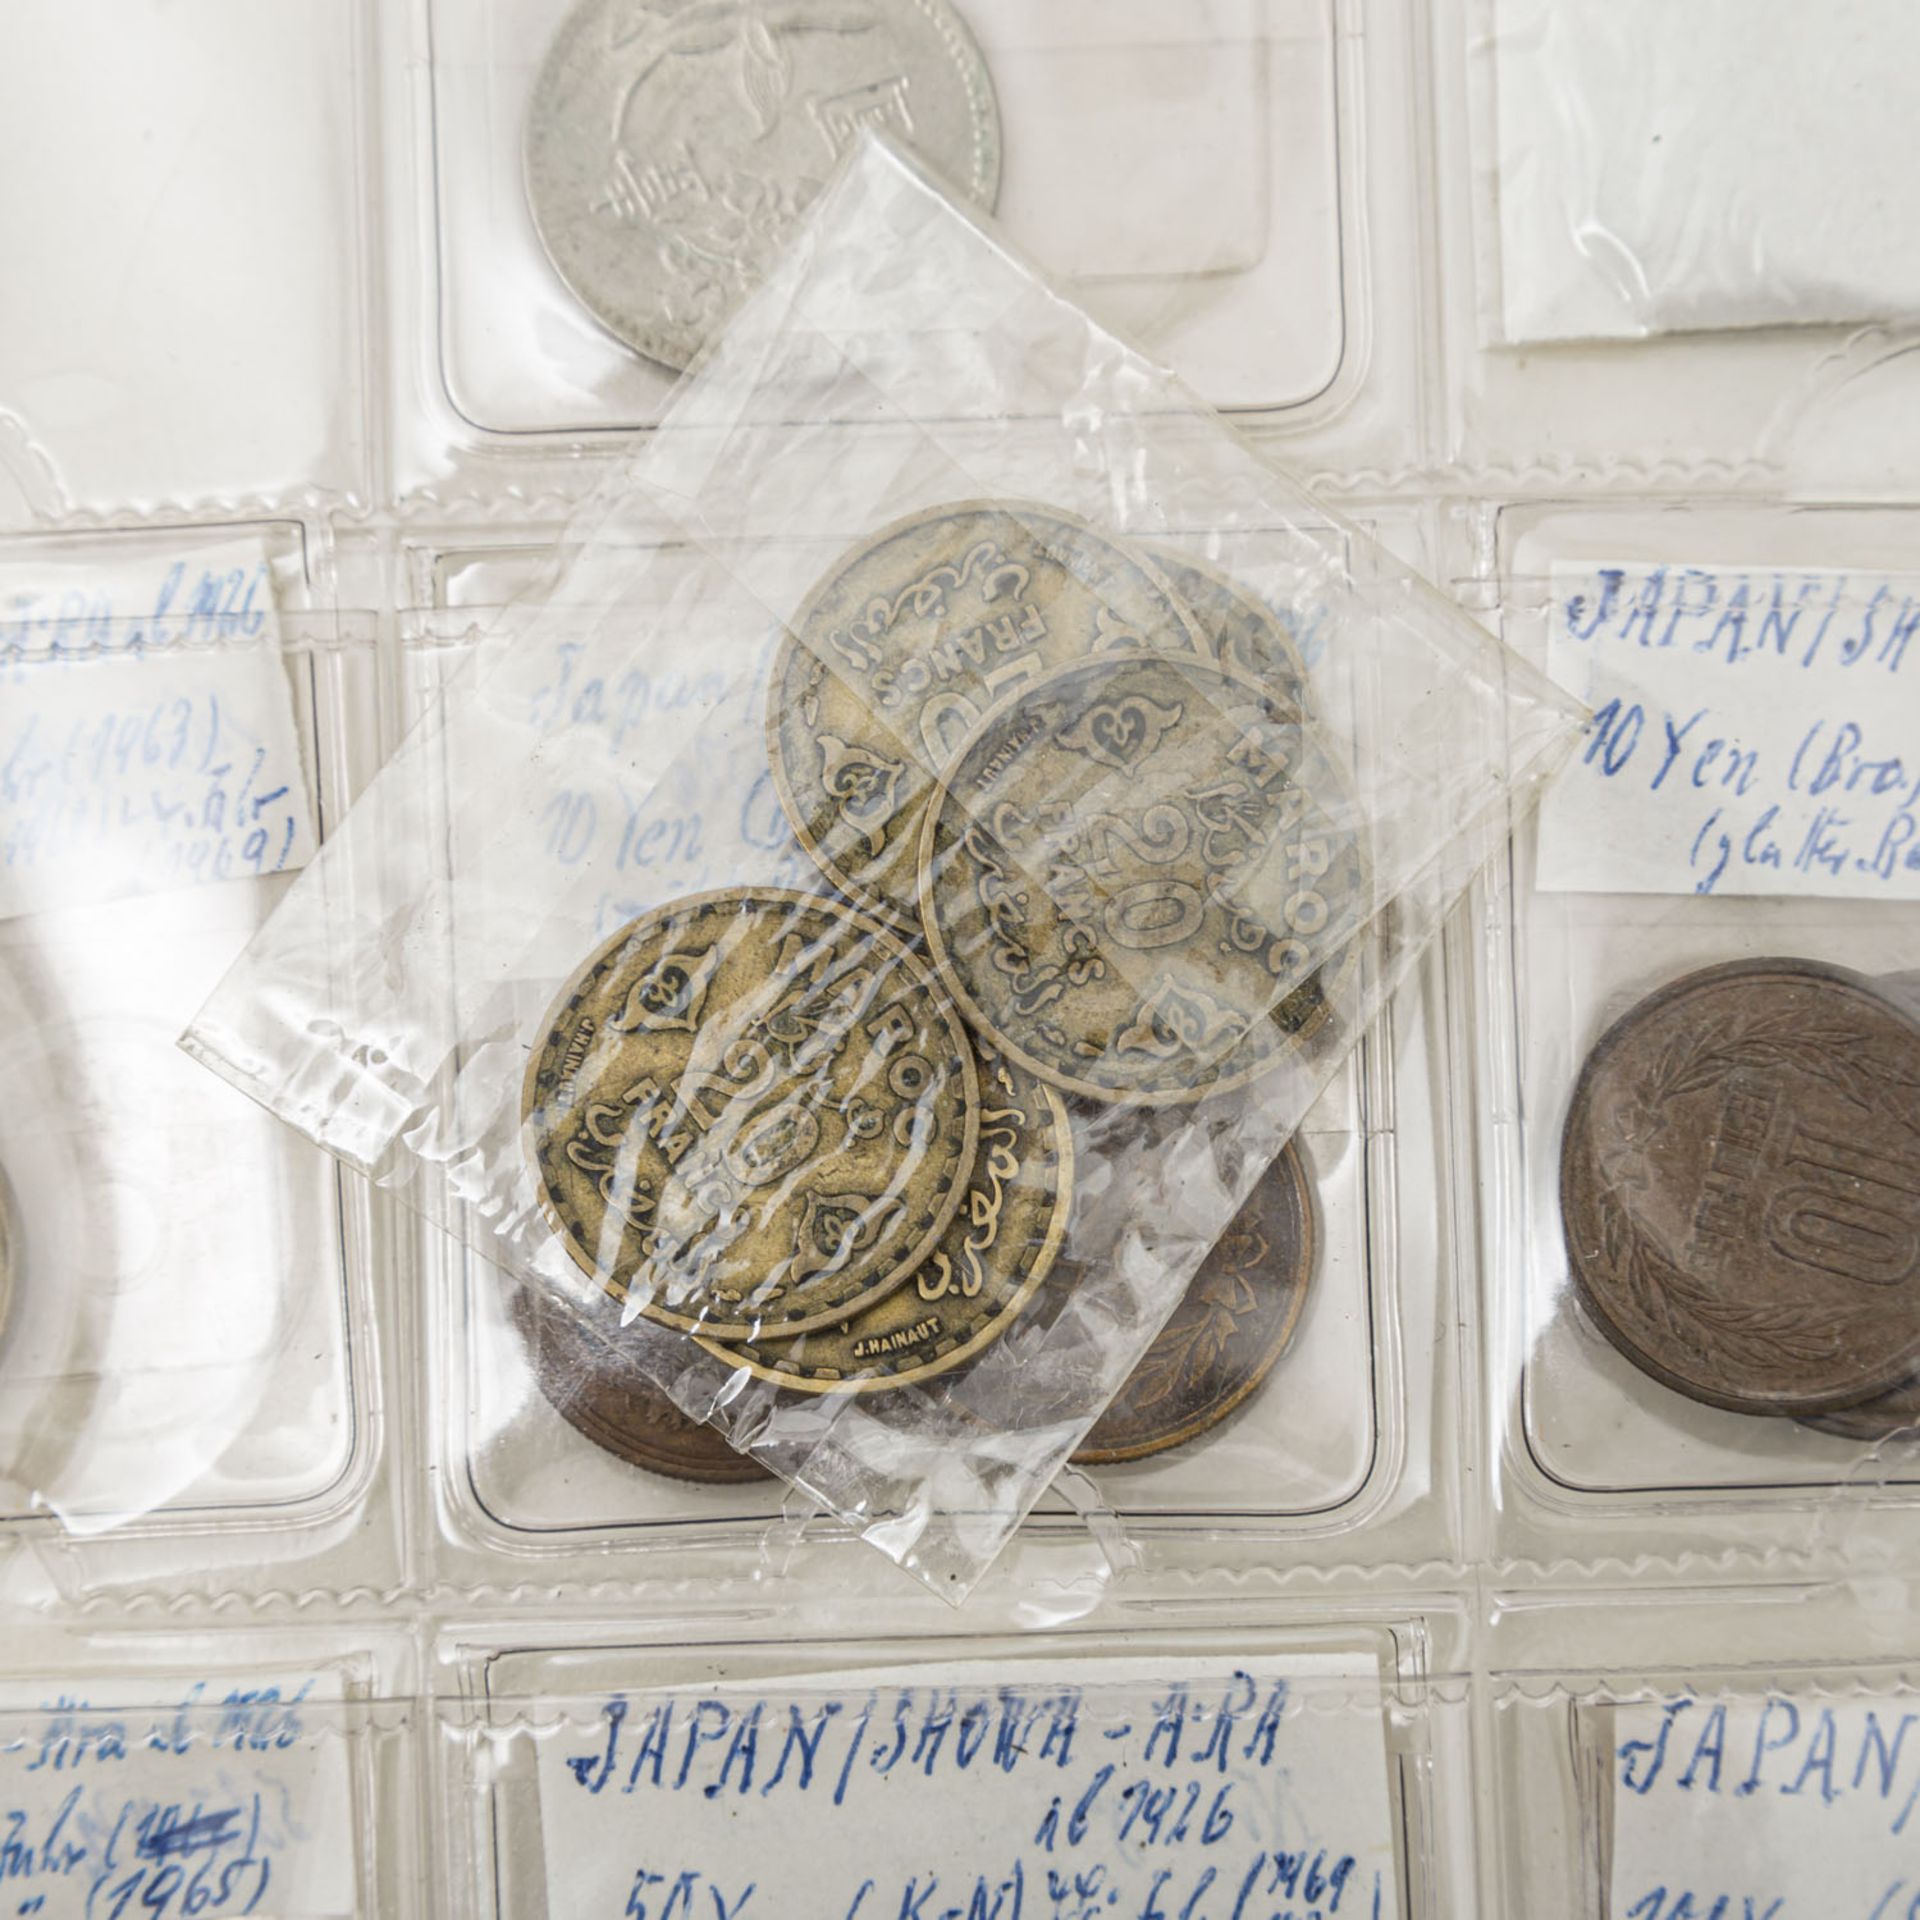 Querschnittssammlung mit Anteil China,vorwiegend Käschmünzen, ohne Obligo für die Authentizität - Bild 2 aus 6